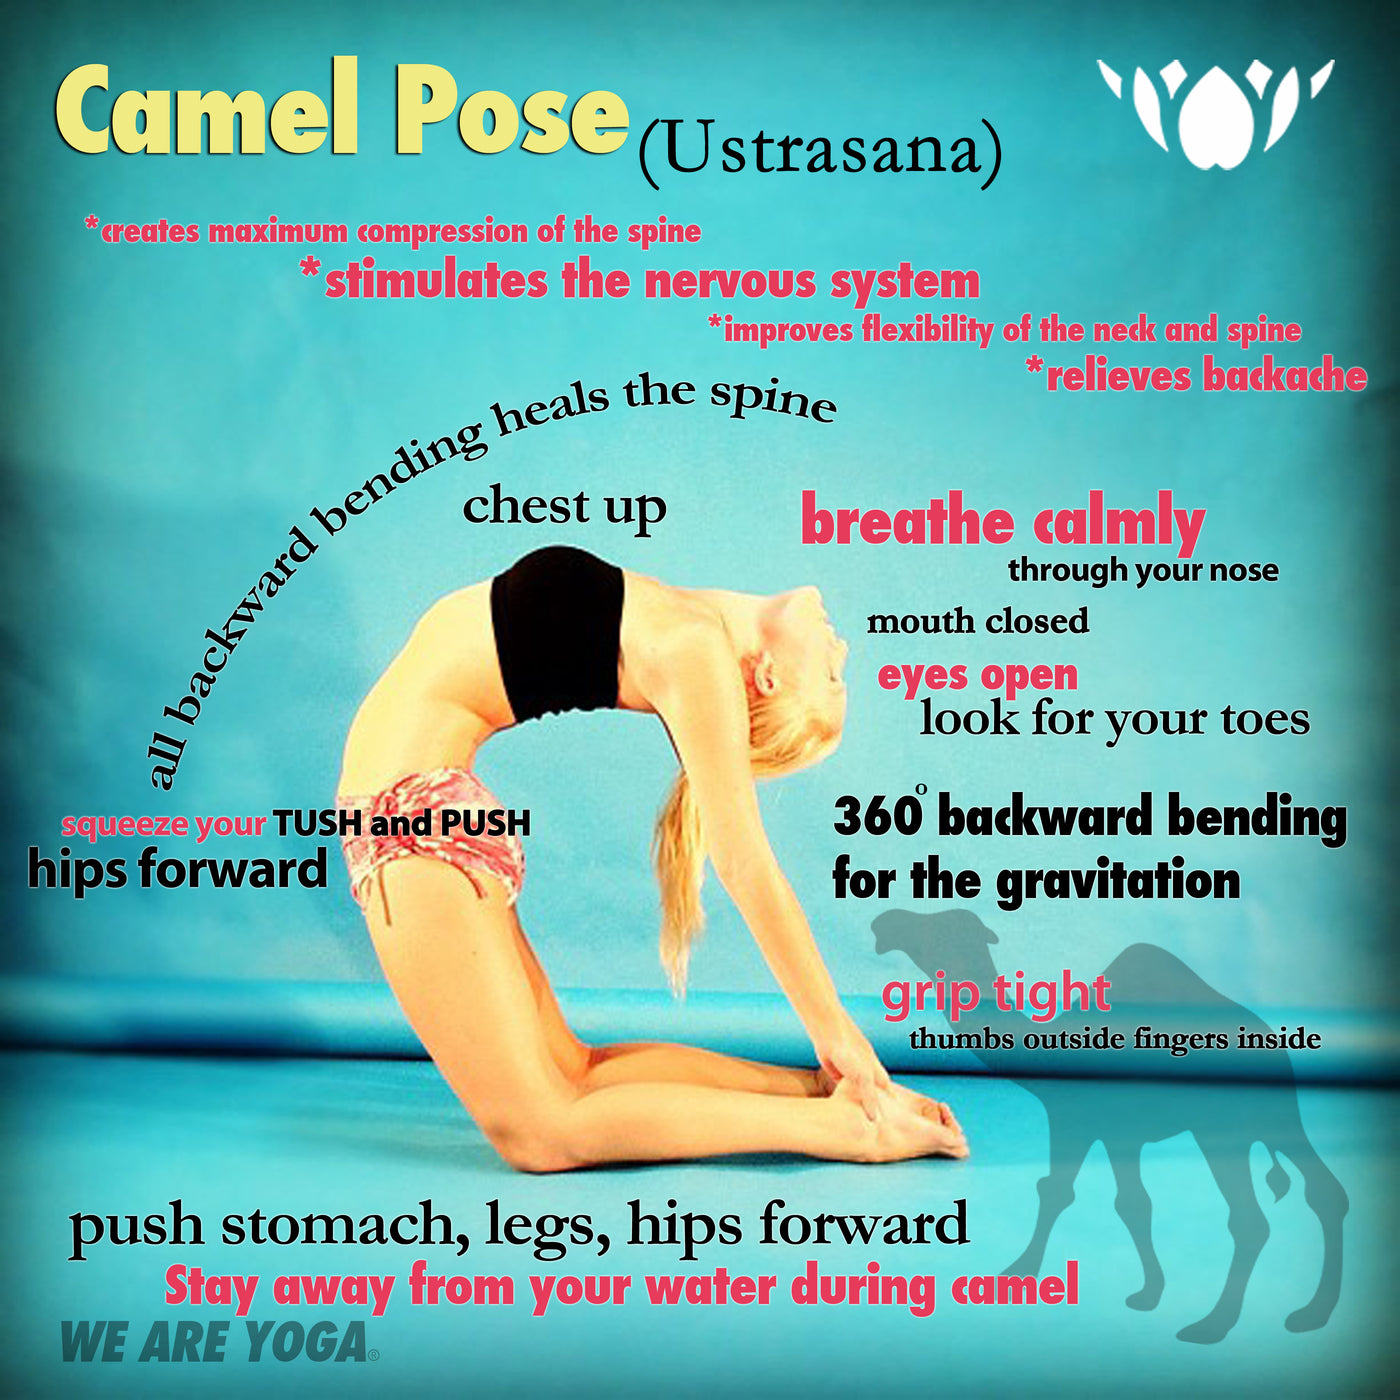 How to Do Camel Pose (Ustrasana)